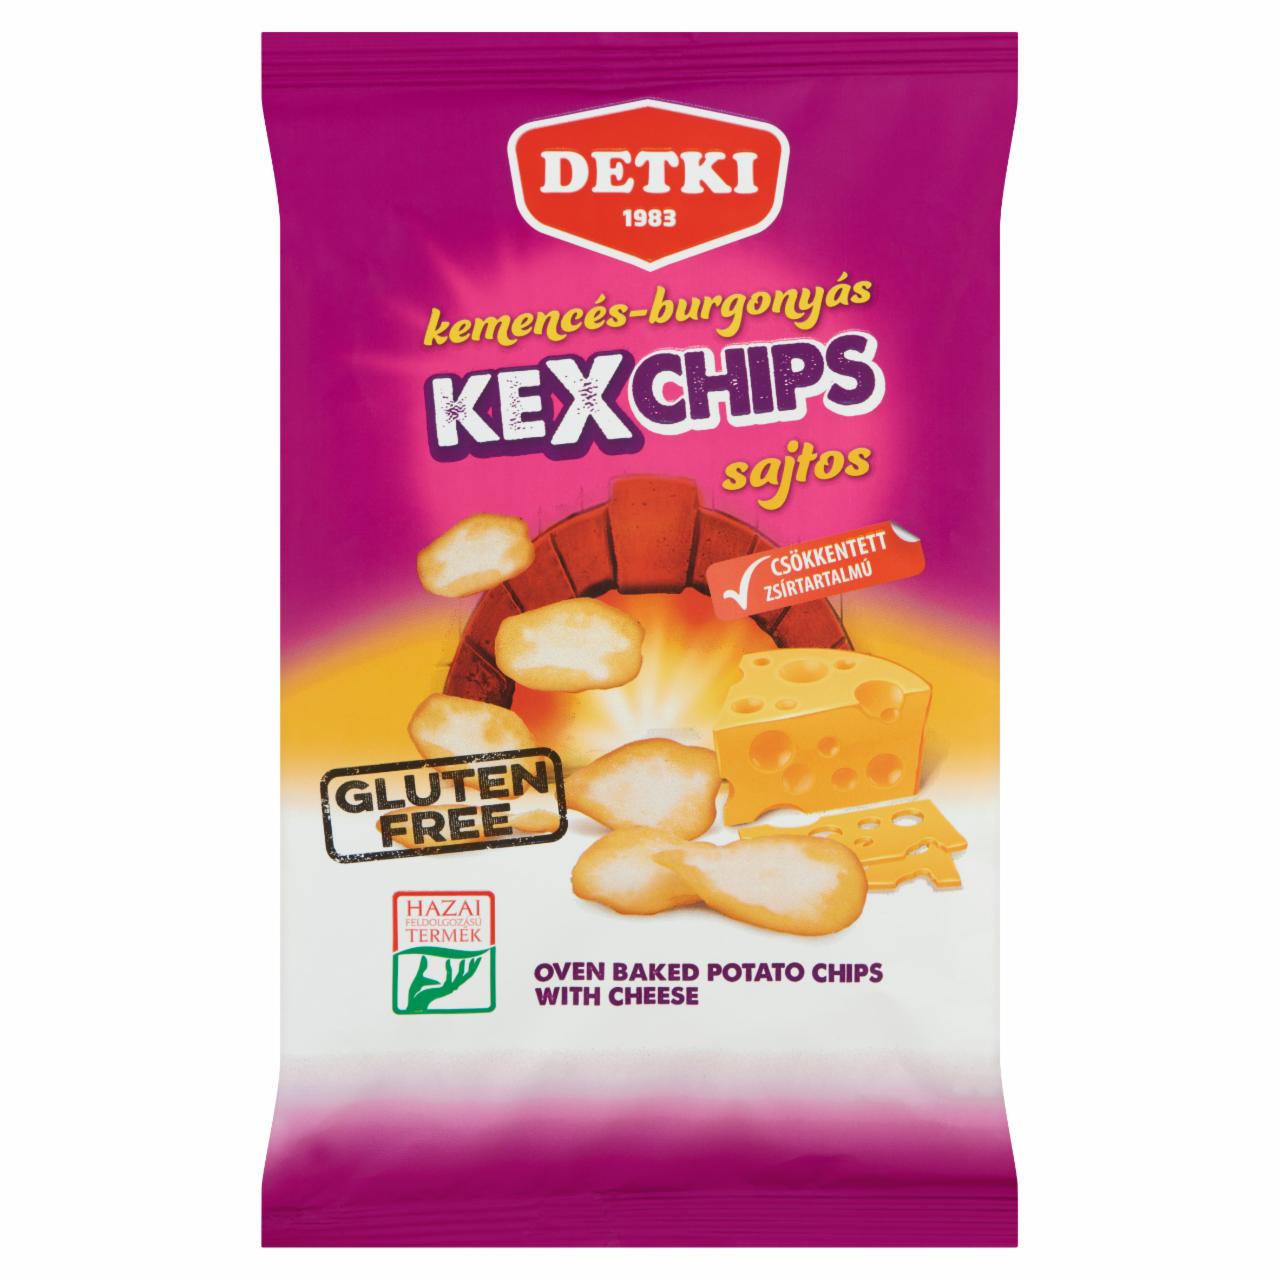 Képek - Detki Kexchips kemencés-burgonyás sajtos chips 75 g